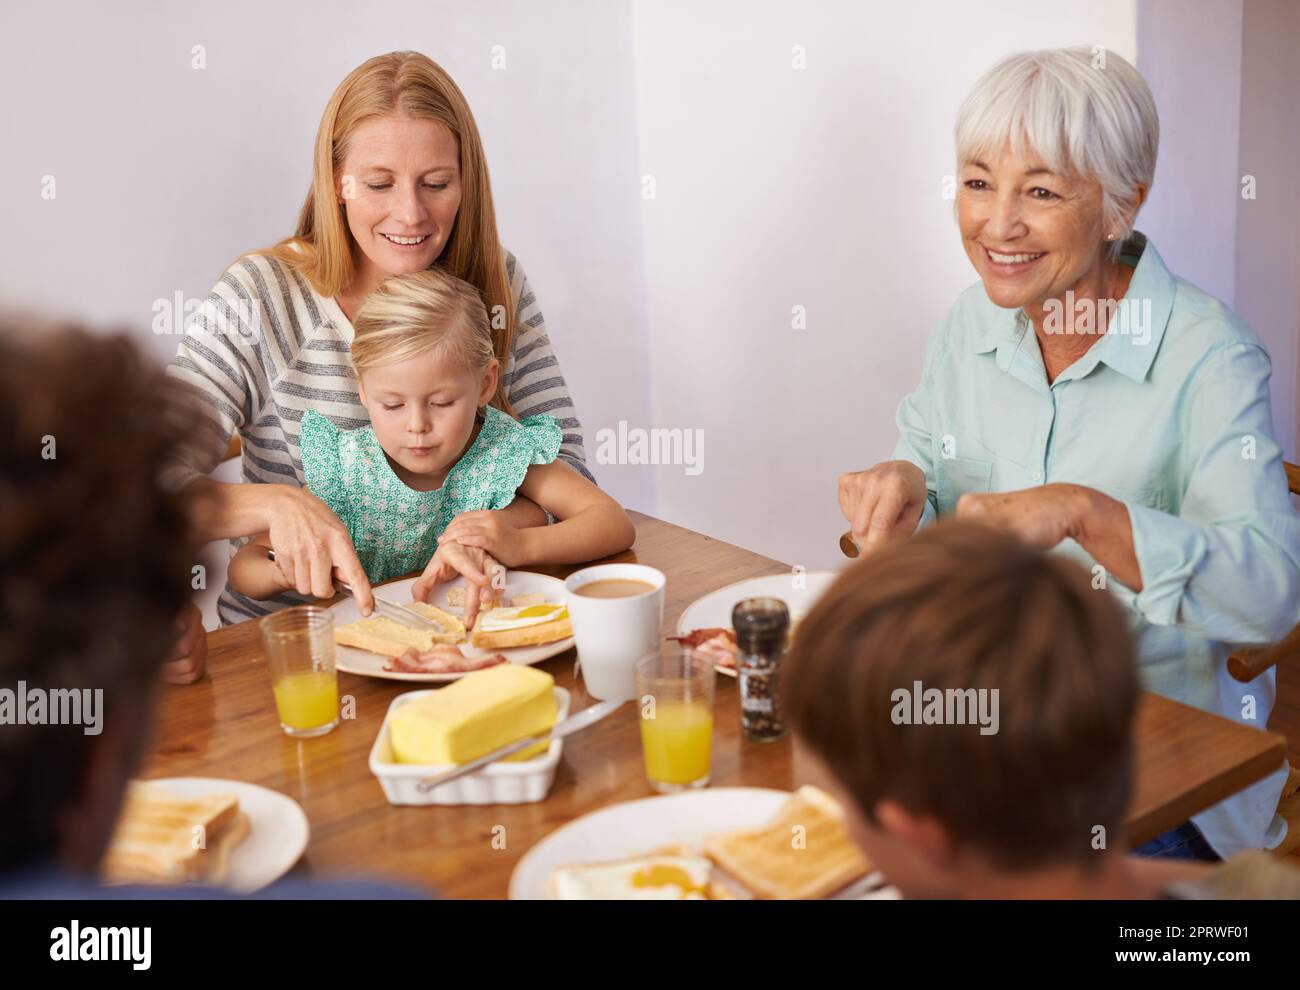 Mütter sind ein Experte für Multitasking. Eine kurze Aufnahme einer glücklichen Familie aus mehreren Generationen, die zu Hause zusammen frühstücken kann. Stockfoto